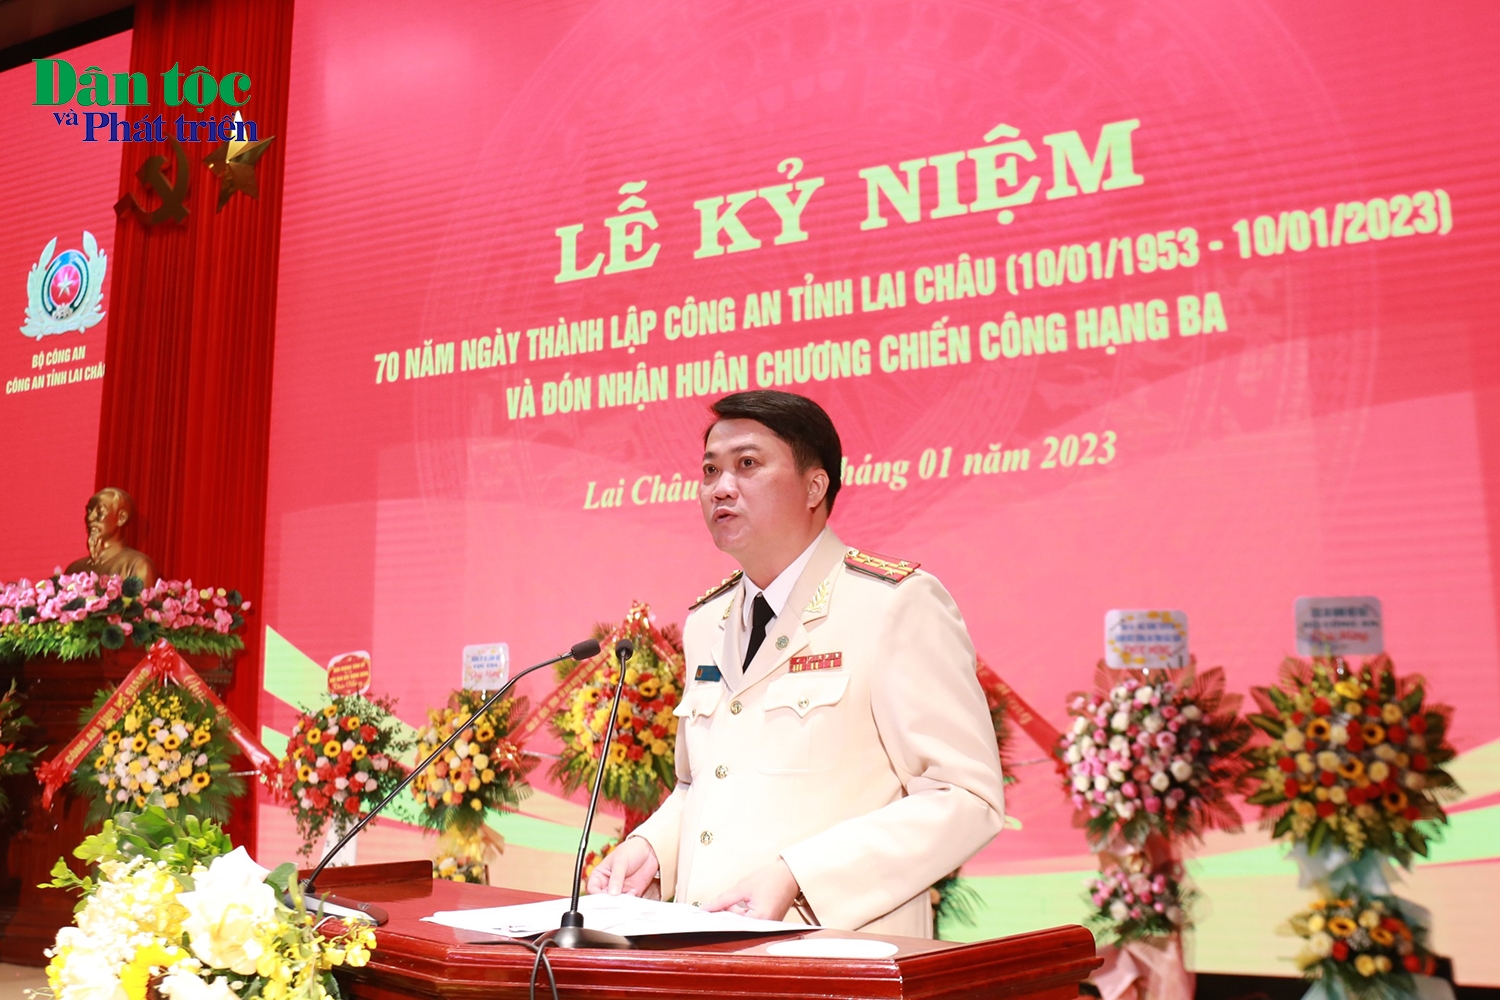 Đại tá, Tiến sĩ Nguyễn Viết Giang - Giám đốc Công an tỉnh Lai Châu trình bày diễn văn tại buổi lễ